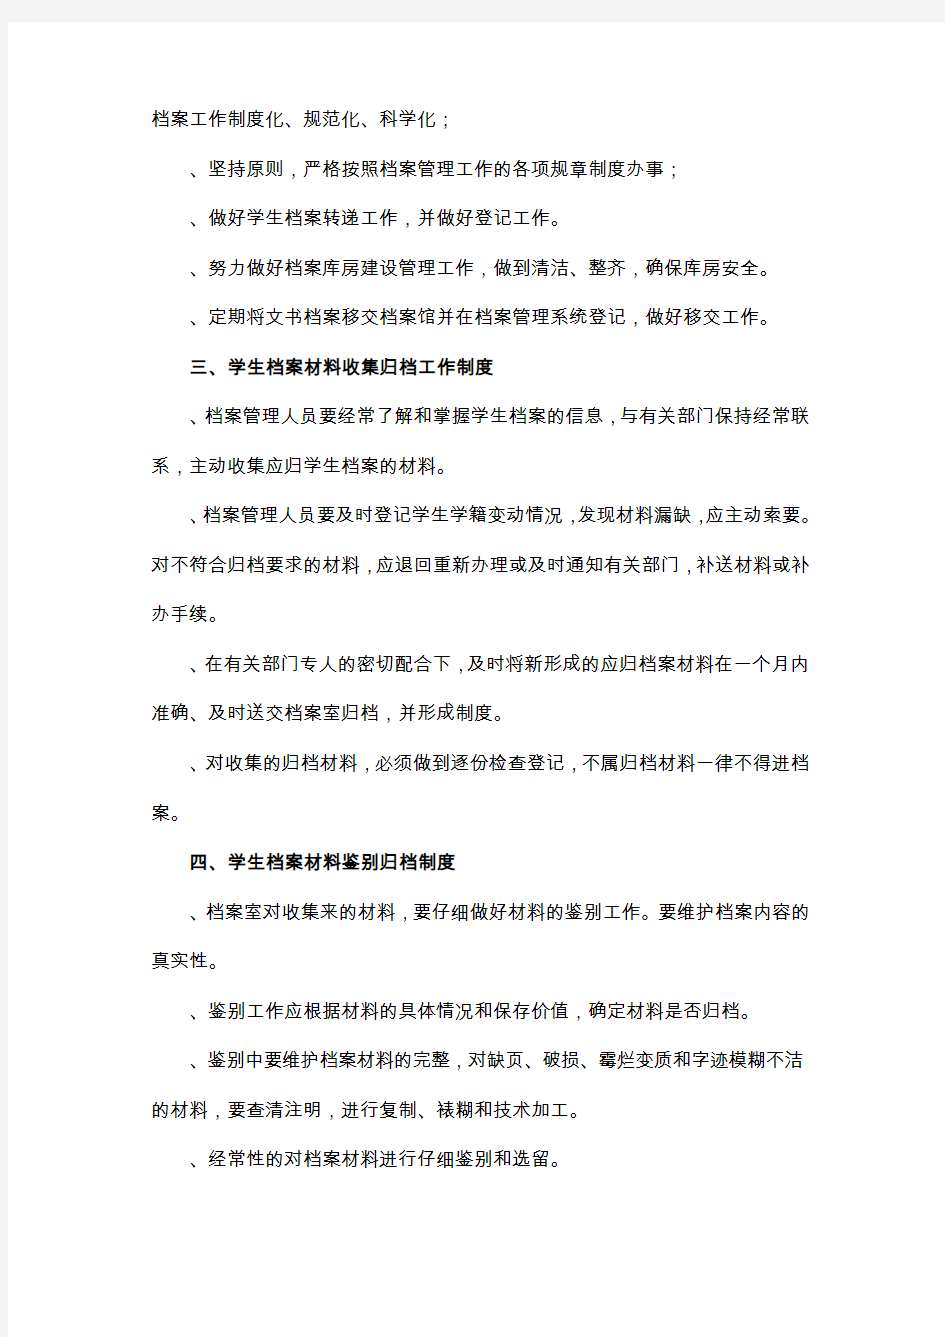 上海理工大学学生档案管理条例